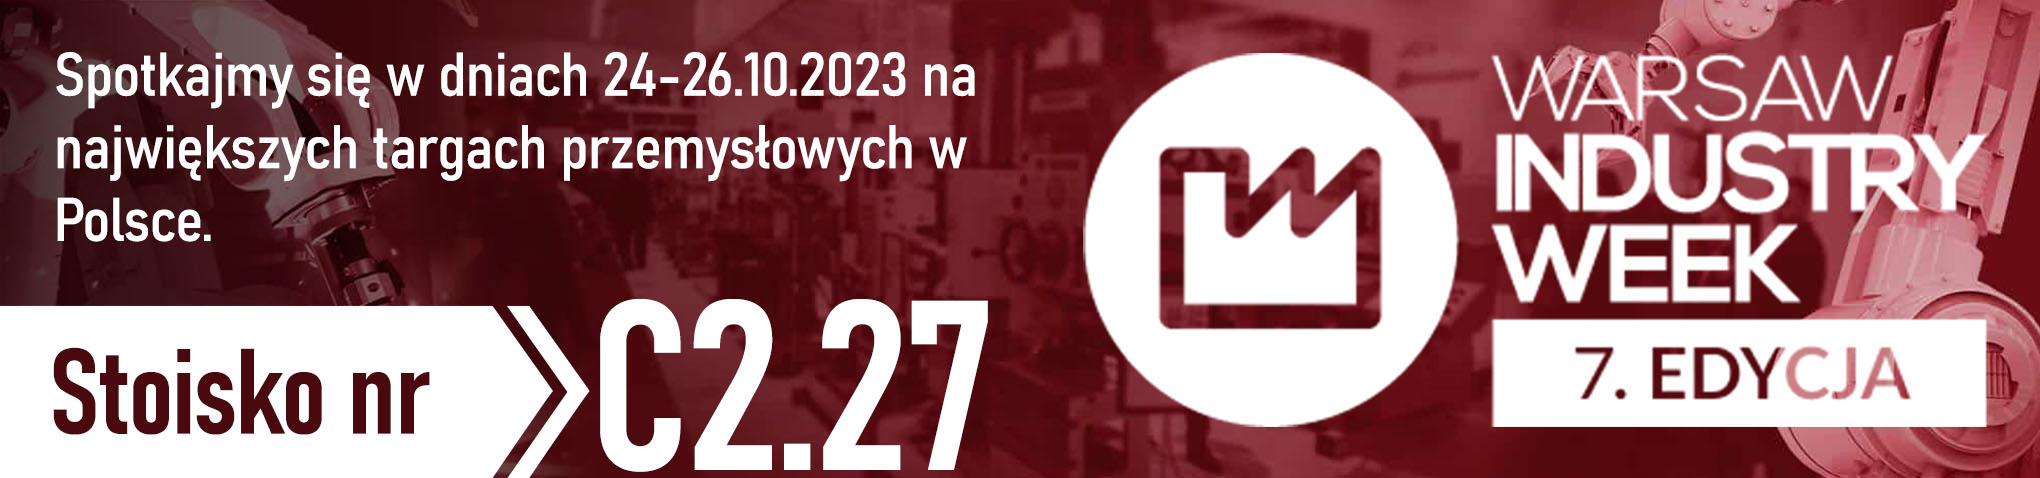 SIGMA S.A. na targach Warsaw Industry Week 2023 - zaproszenie